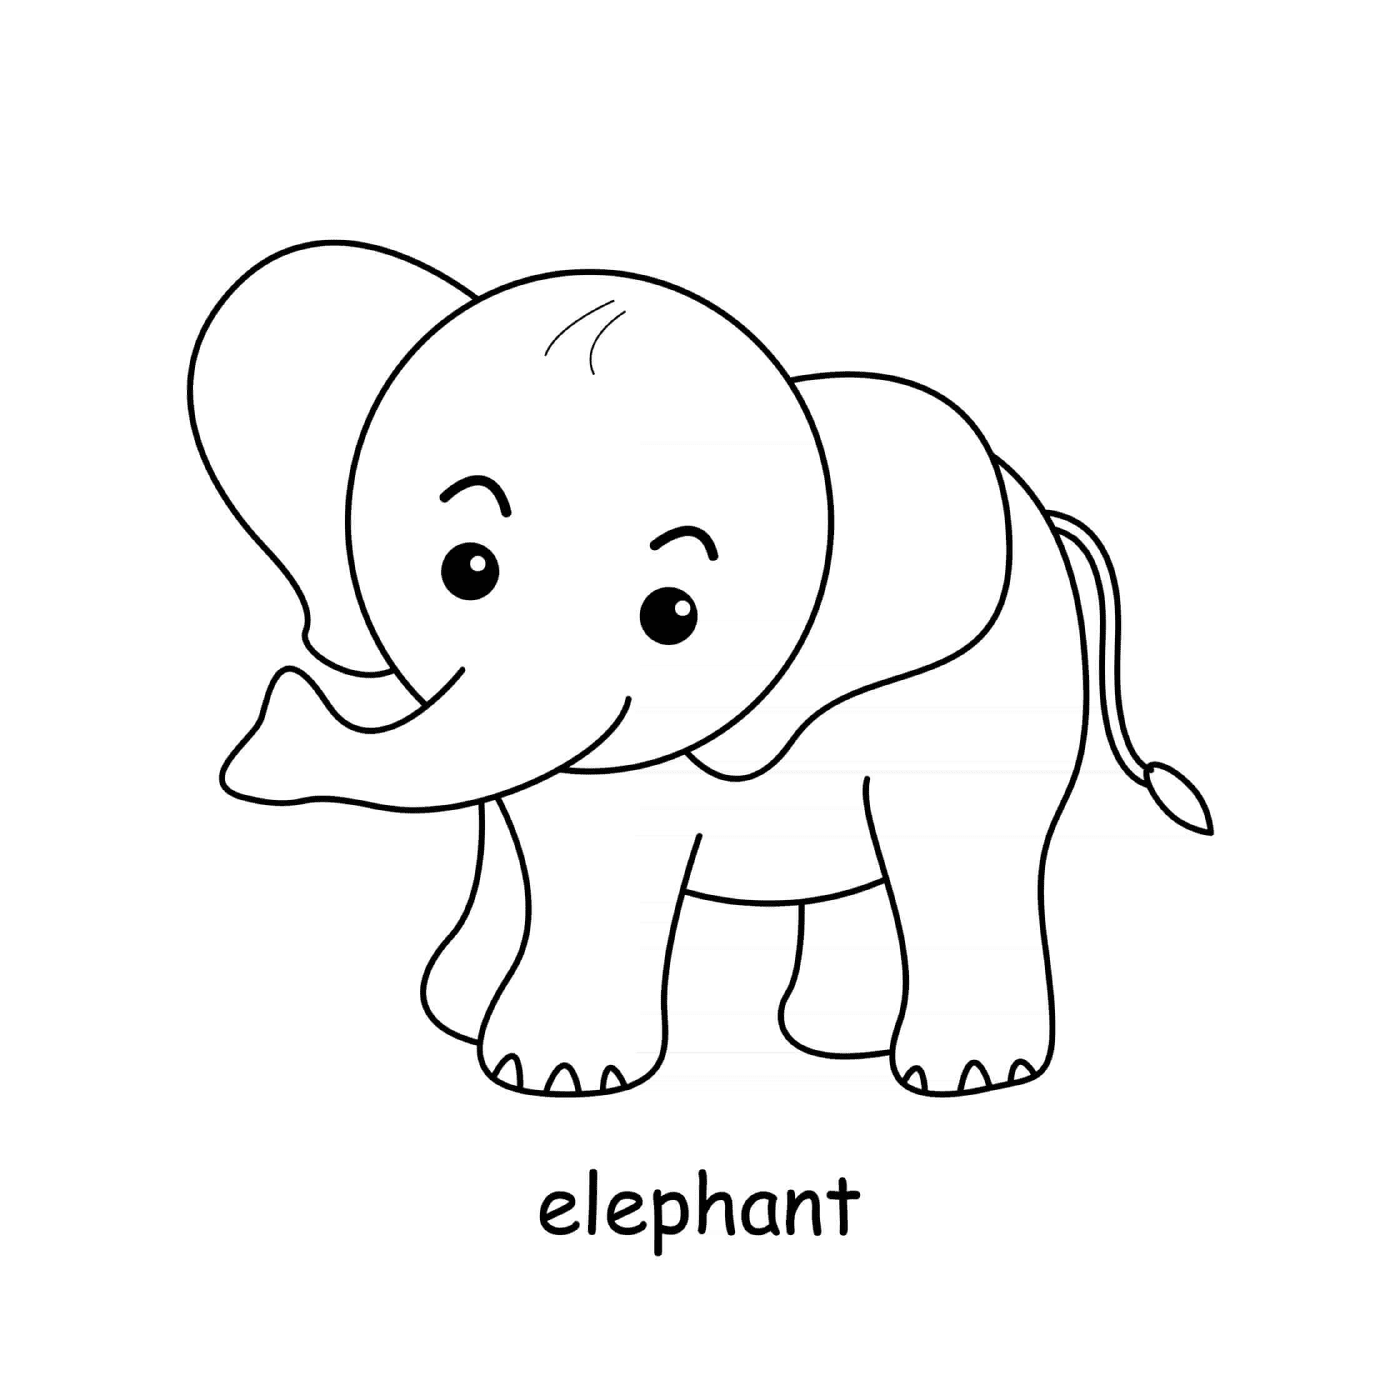  可爱可爱可爱的大象 